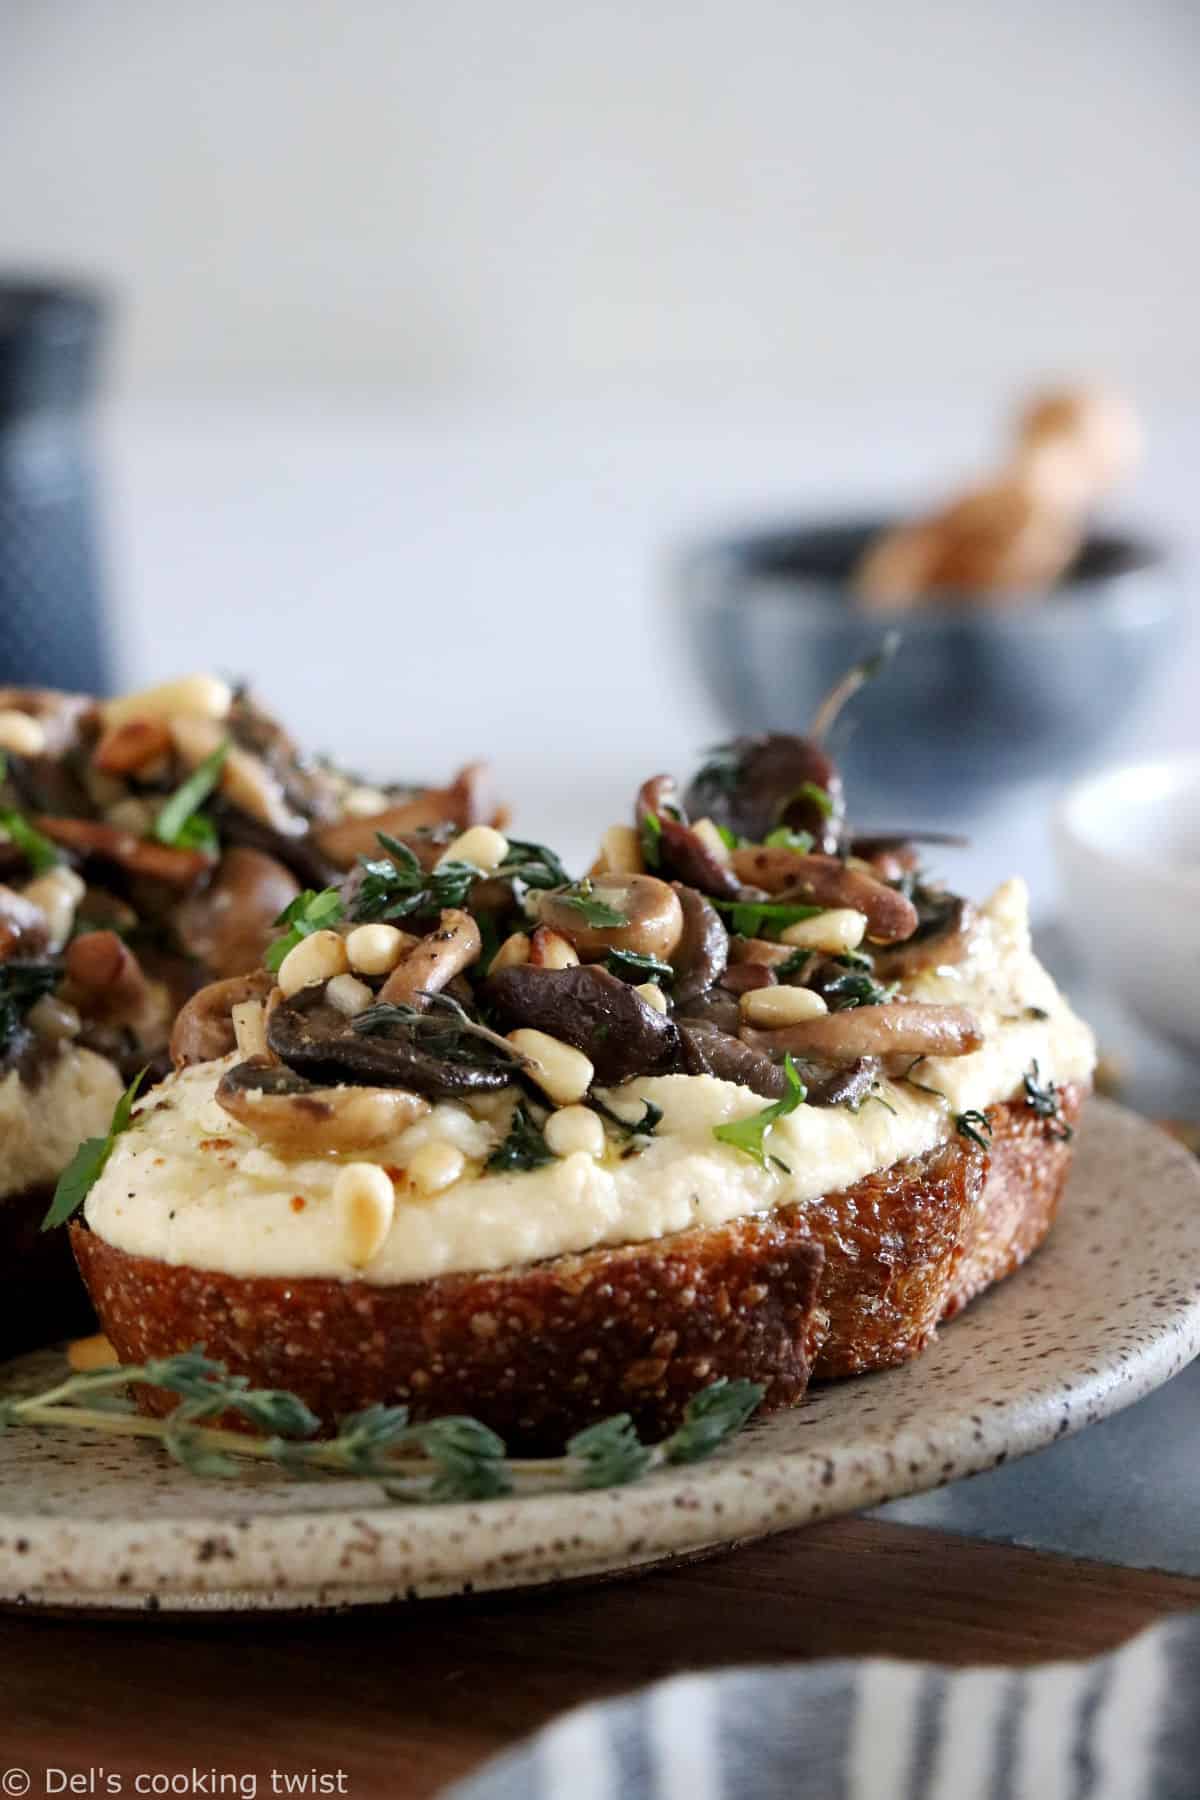 Les tartines de houmous et champignons à l'ail constituent une idée toute simple, express et riche en saveurs.